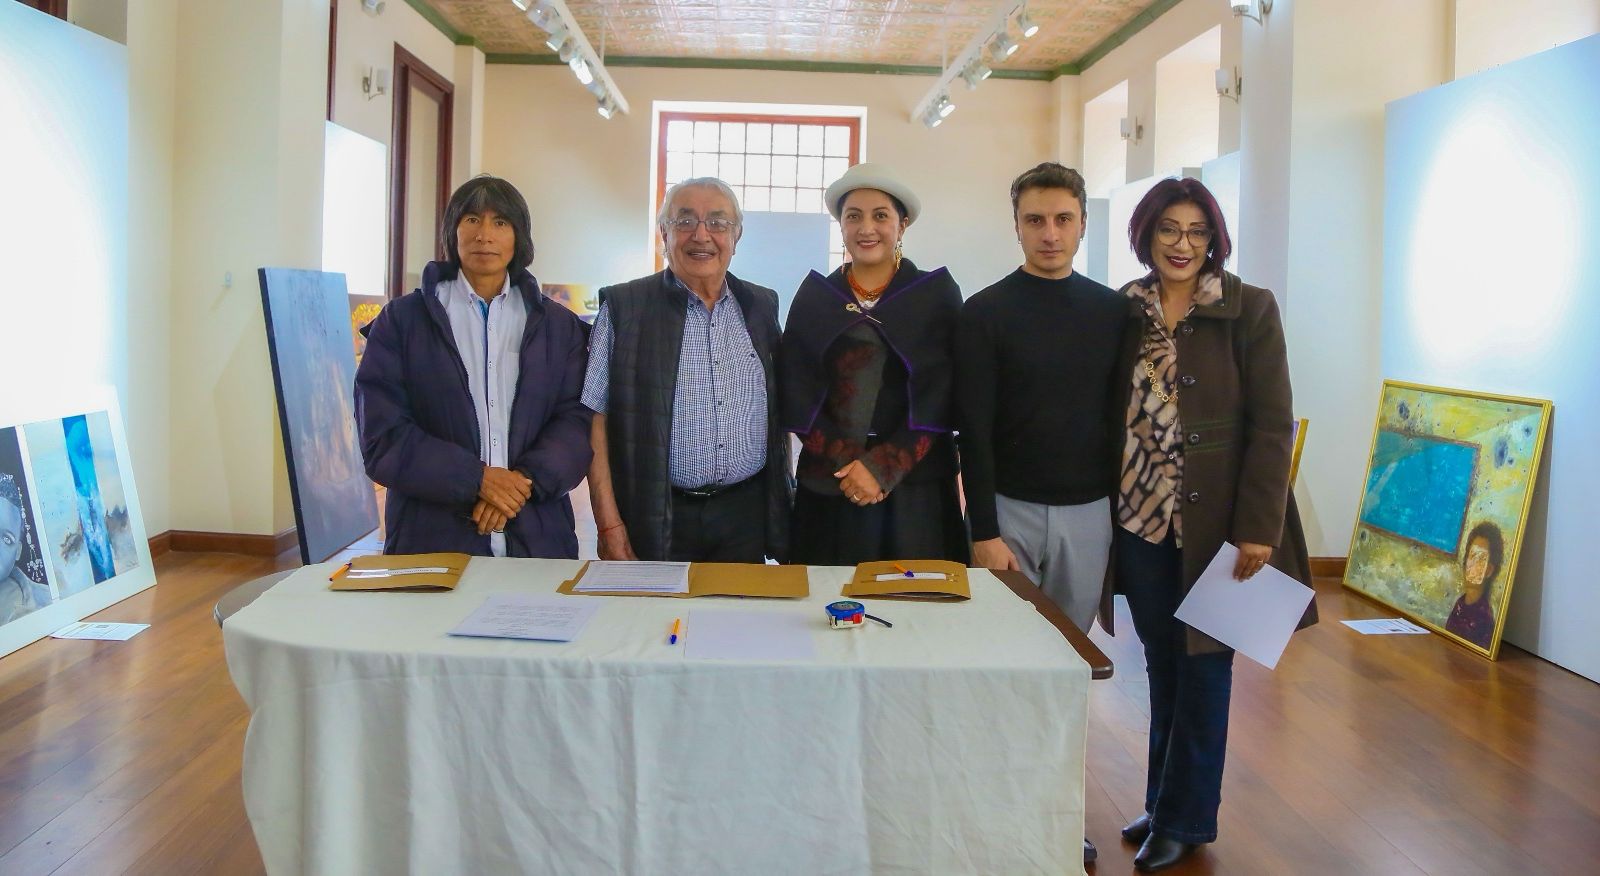 La alcaldesa Diana Caiza se reunió con el jurado calificador del Salón de Pintura Luis A. Martínez.